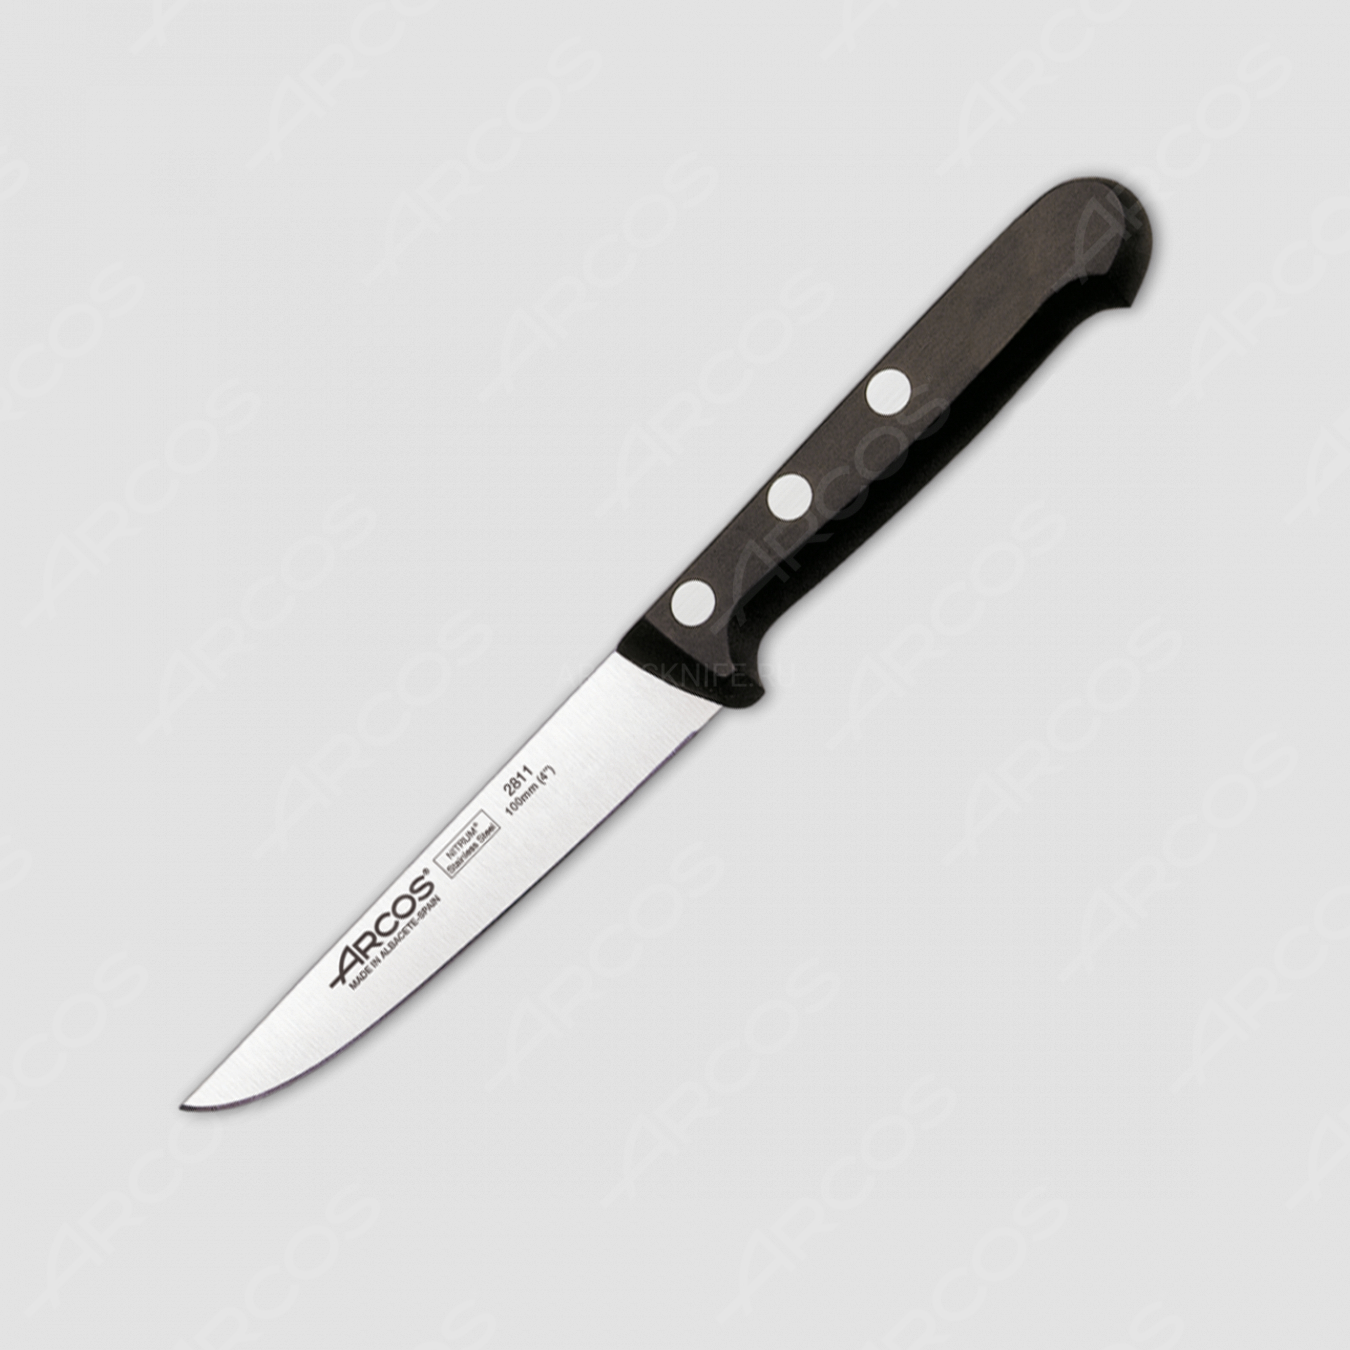 Нож кухонный овощной 10 см, серия Universal, ARCOS, Испания